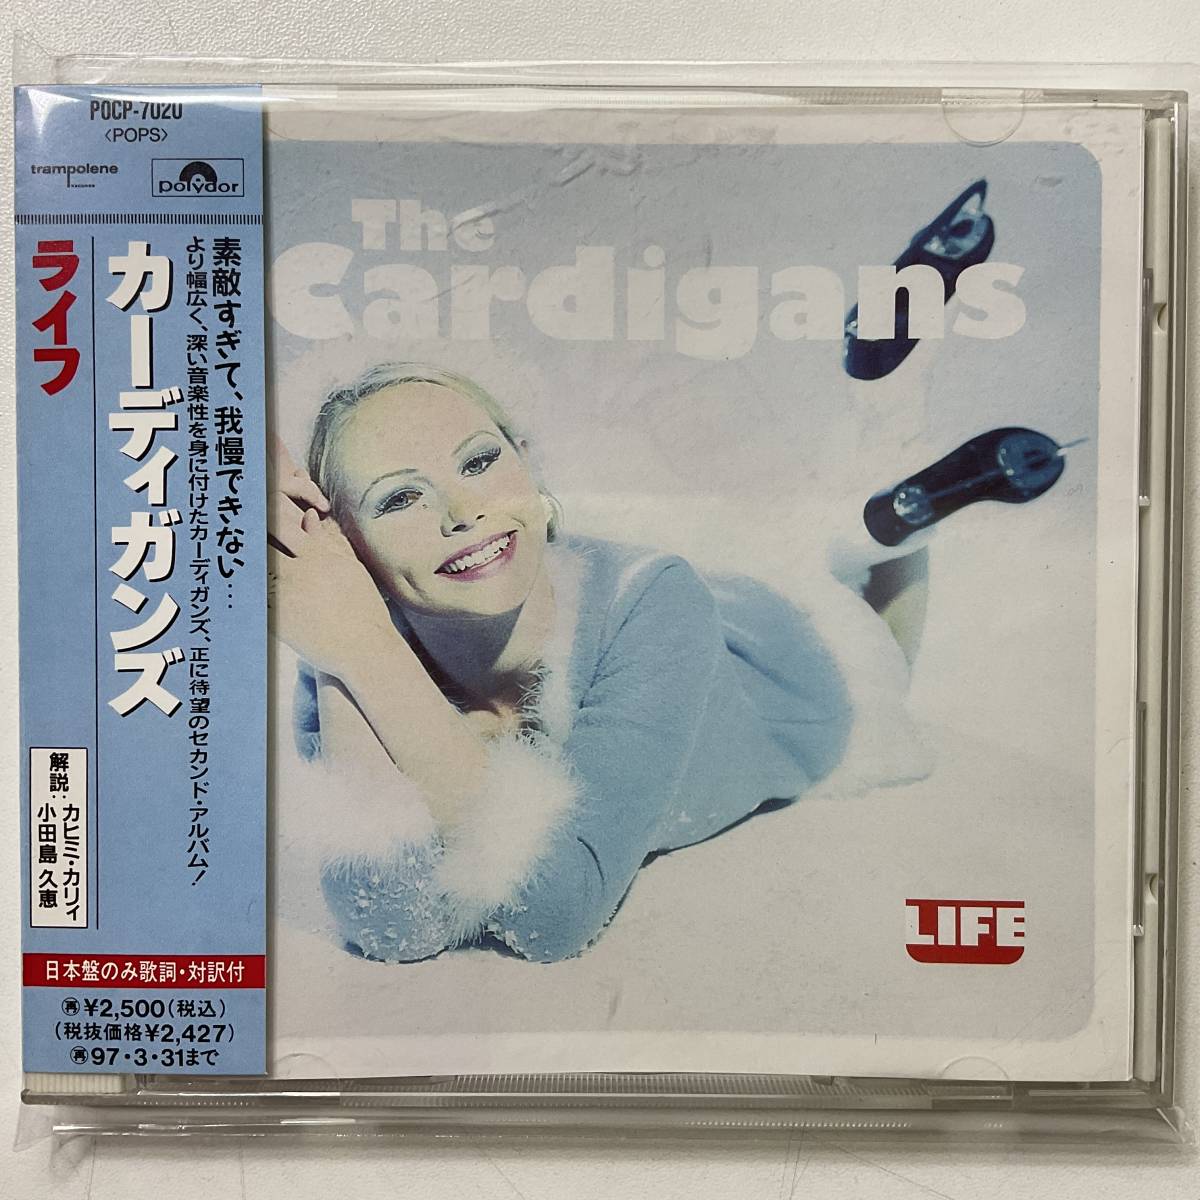 1円 CD カーディガンズ ライフ THE CARDIGANS LIFE 日本盤 美盤 帯 解説 カヒミカリィ 歌詞 対訳付き LICCA*RECORDS 307 W/OBI BOOKLETの画像1